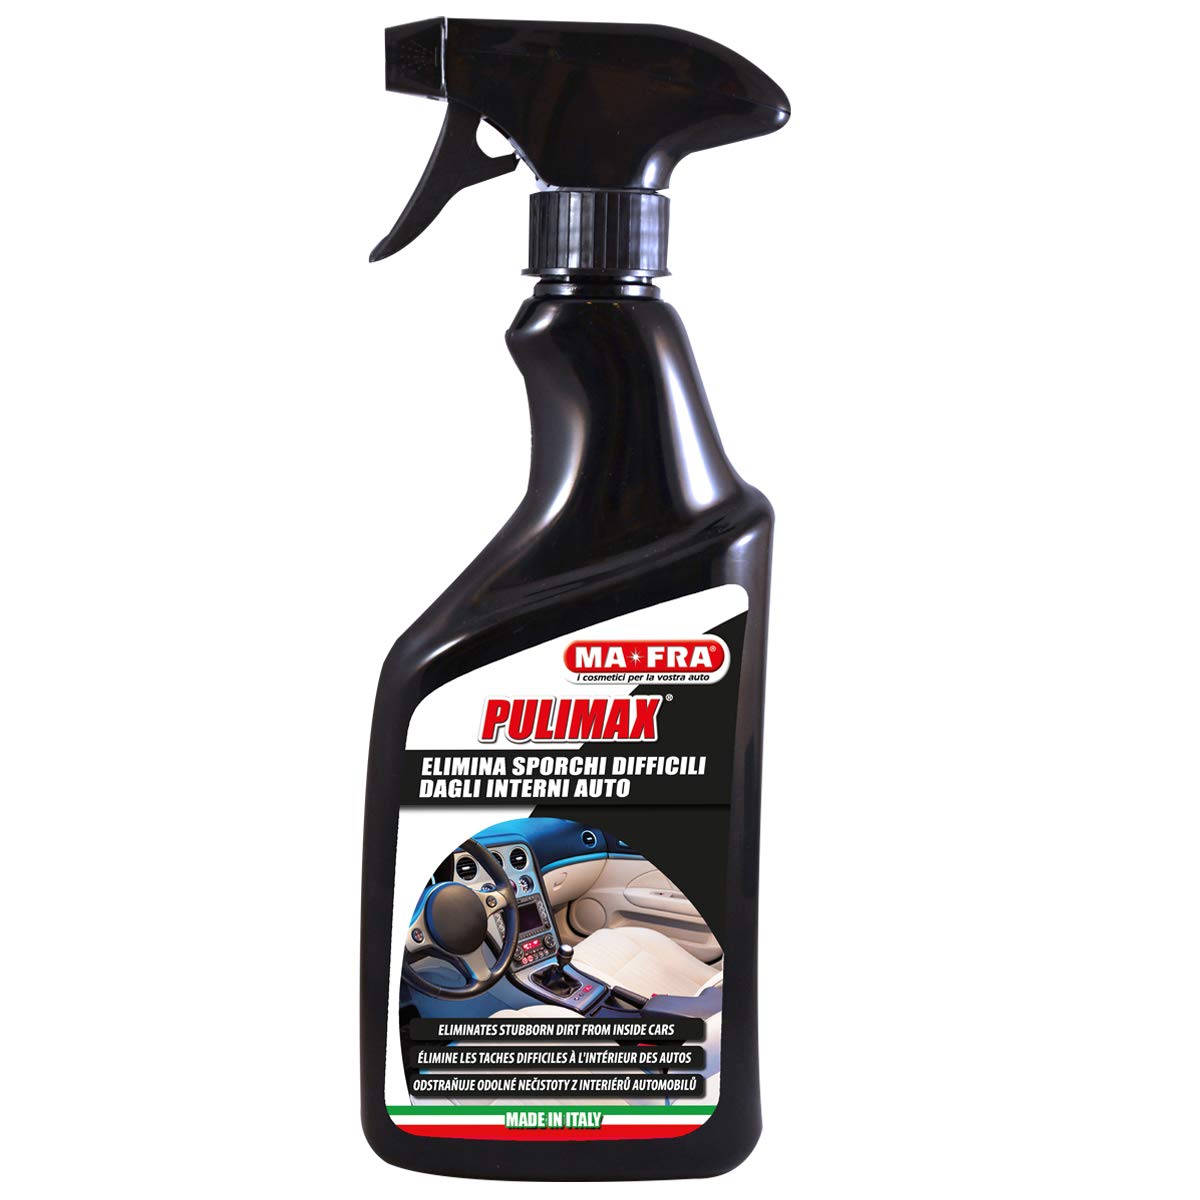 MA-FRA H0215 Pulimax Mehrzweck-Waschmittel für Autoinnenräume, erneuert Farben und entfernt hartnäckigen Schmutz, neutralisiert Gerüche und hinterlässt ein zartes Parfüm, Größe 500 ml von Mafra